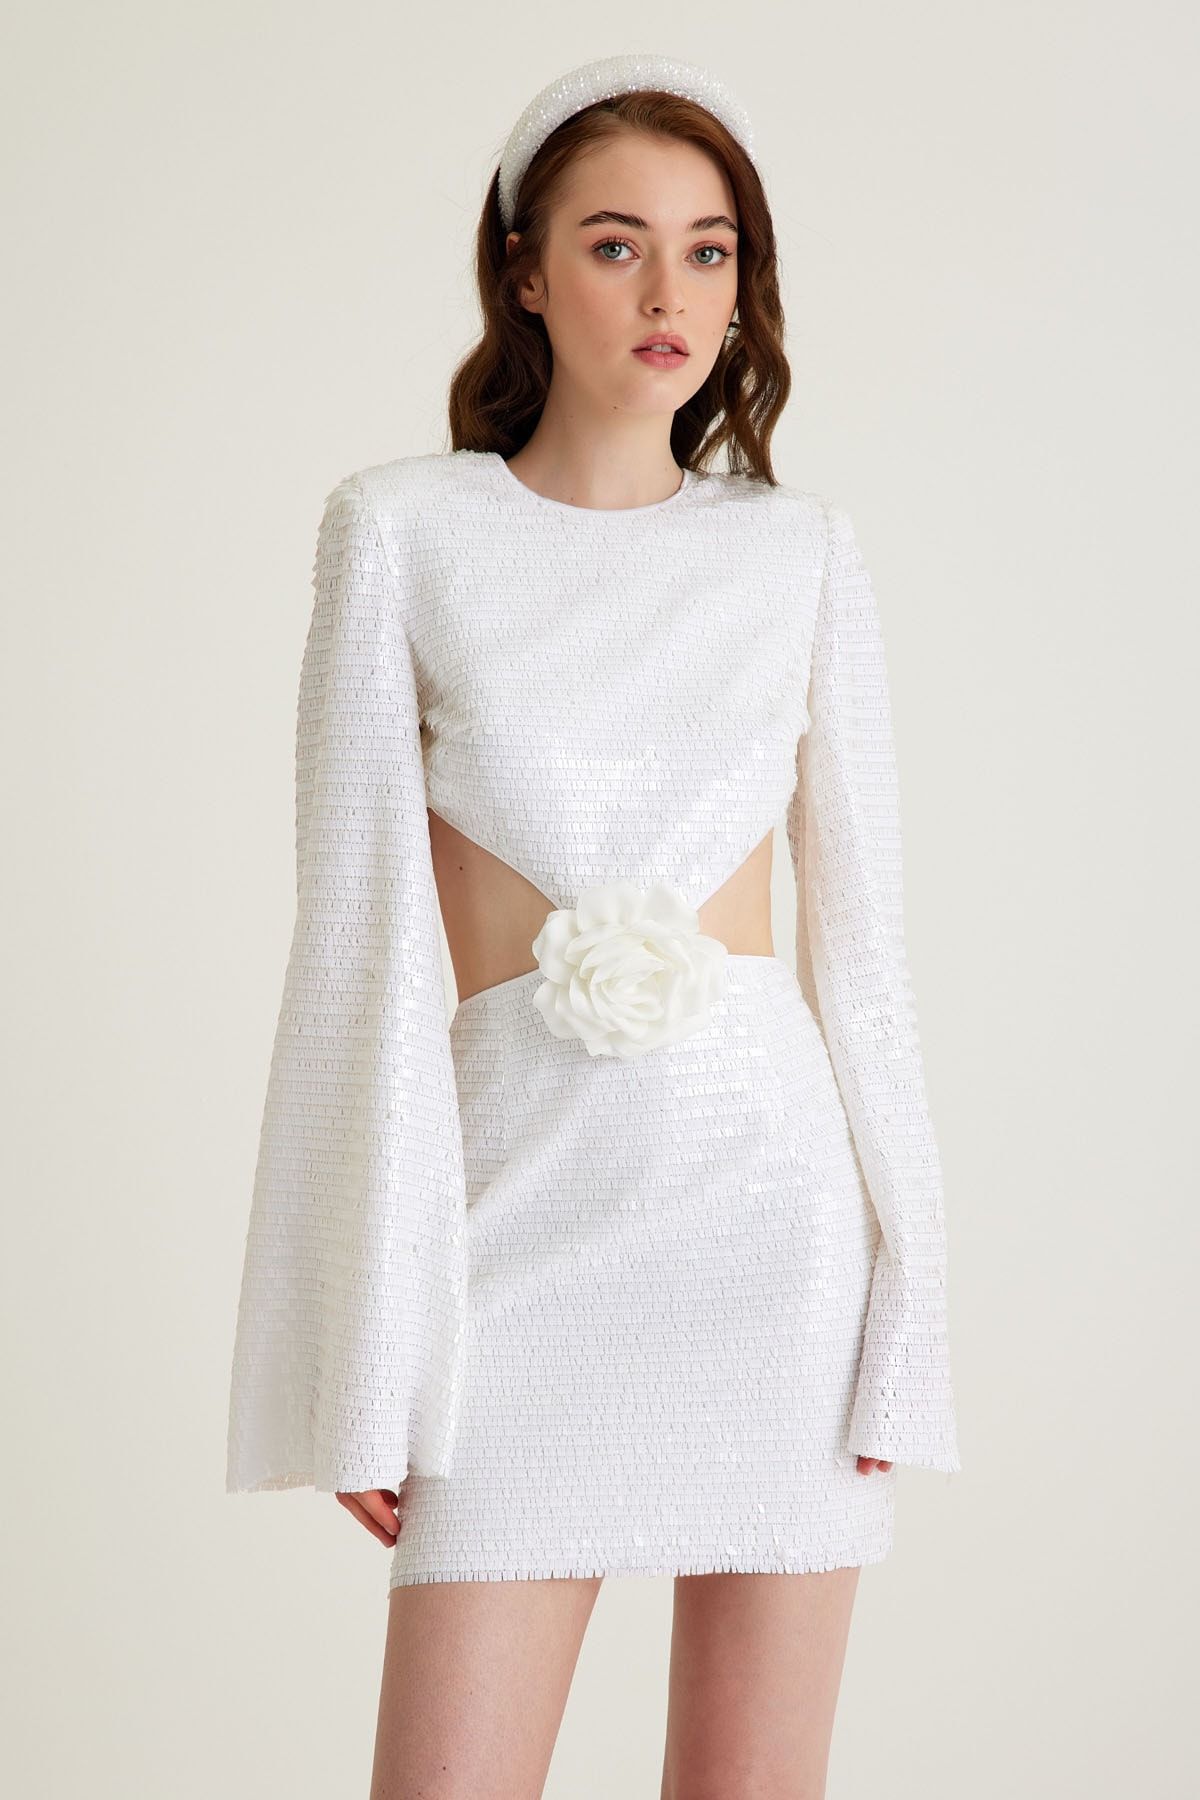 Tara Coşkuntuncel Beyaz Payet Çiçek Detaylı Cut Out Mini Nişan Elbisesi